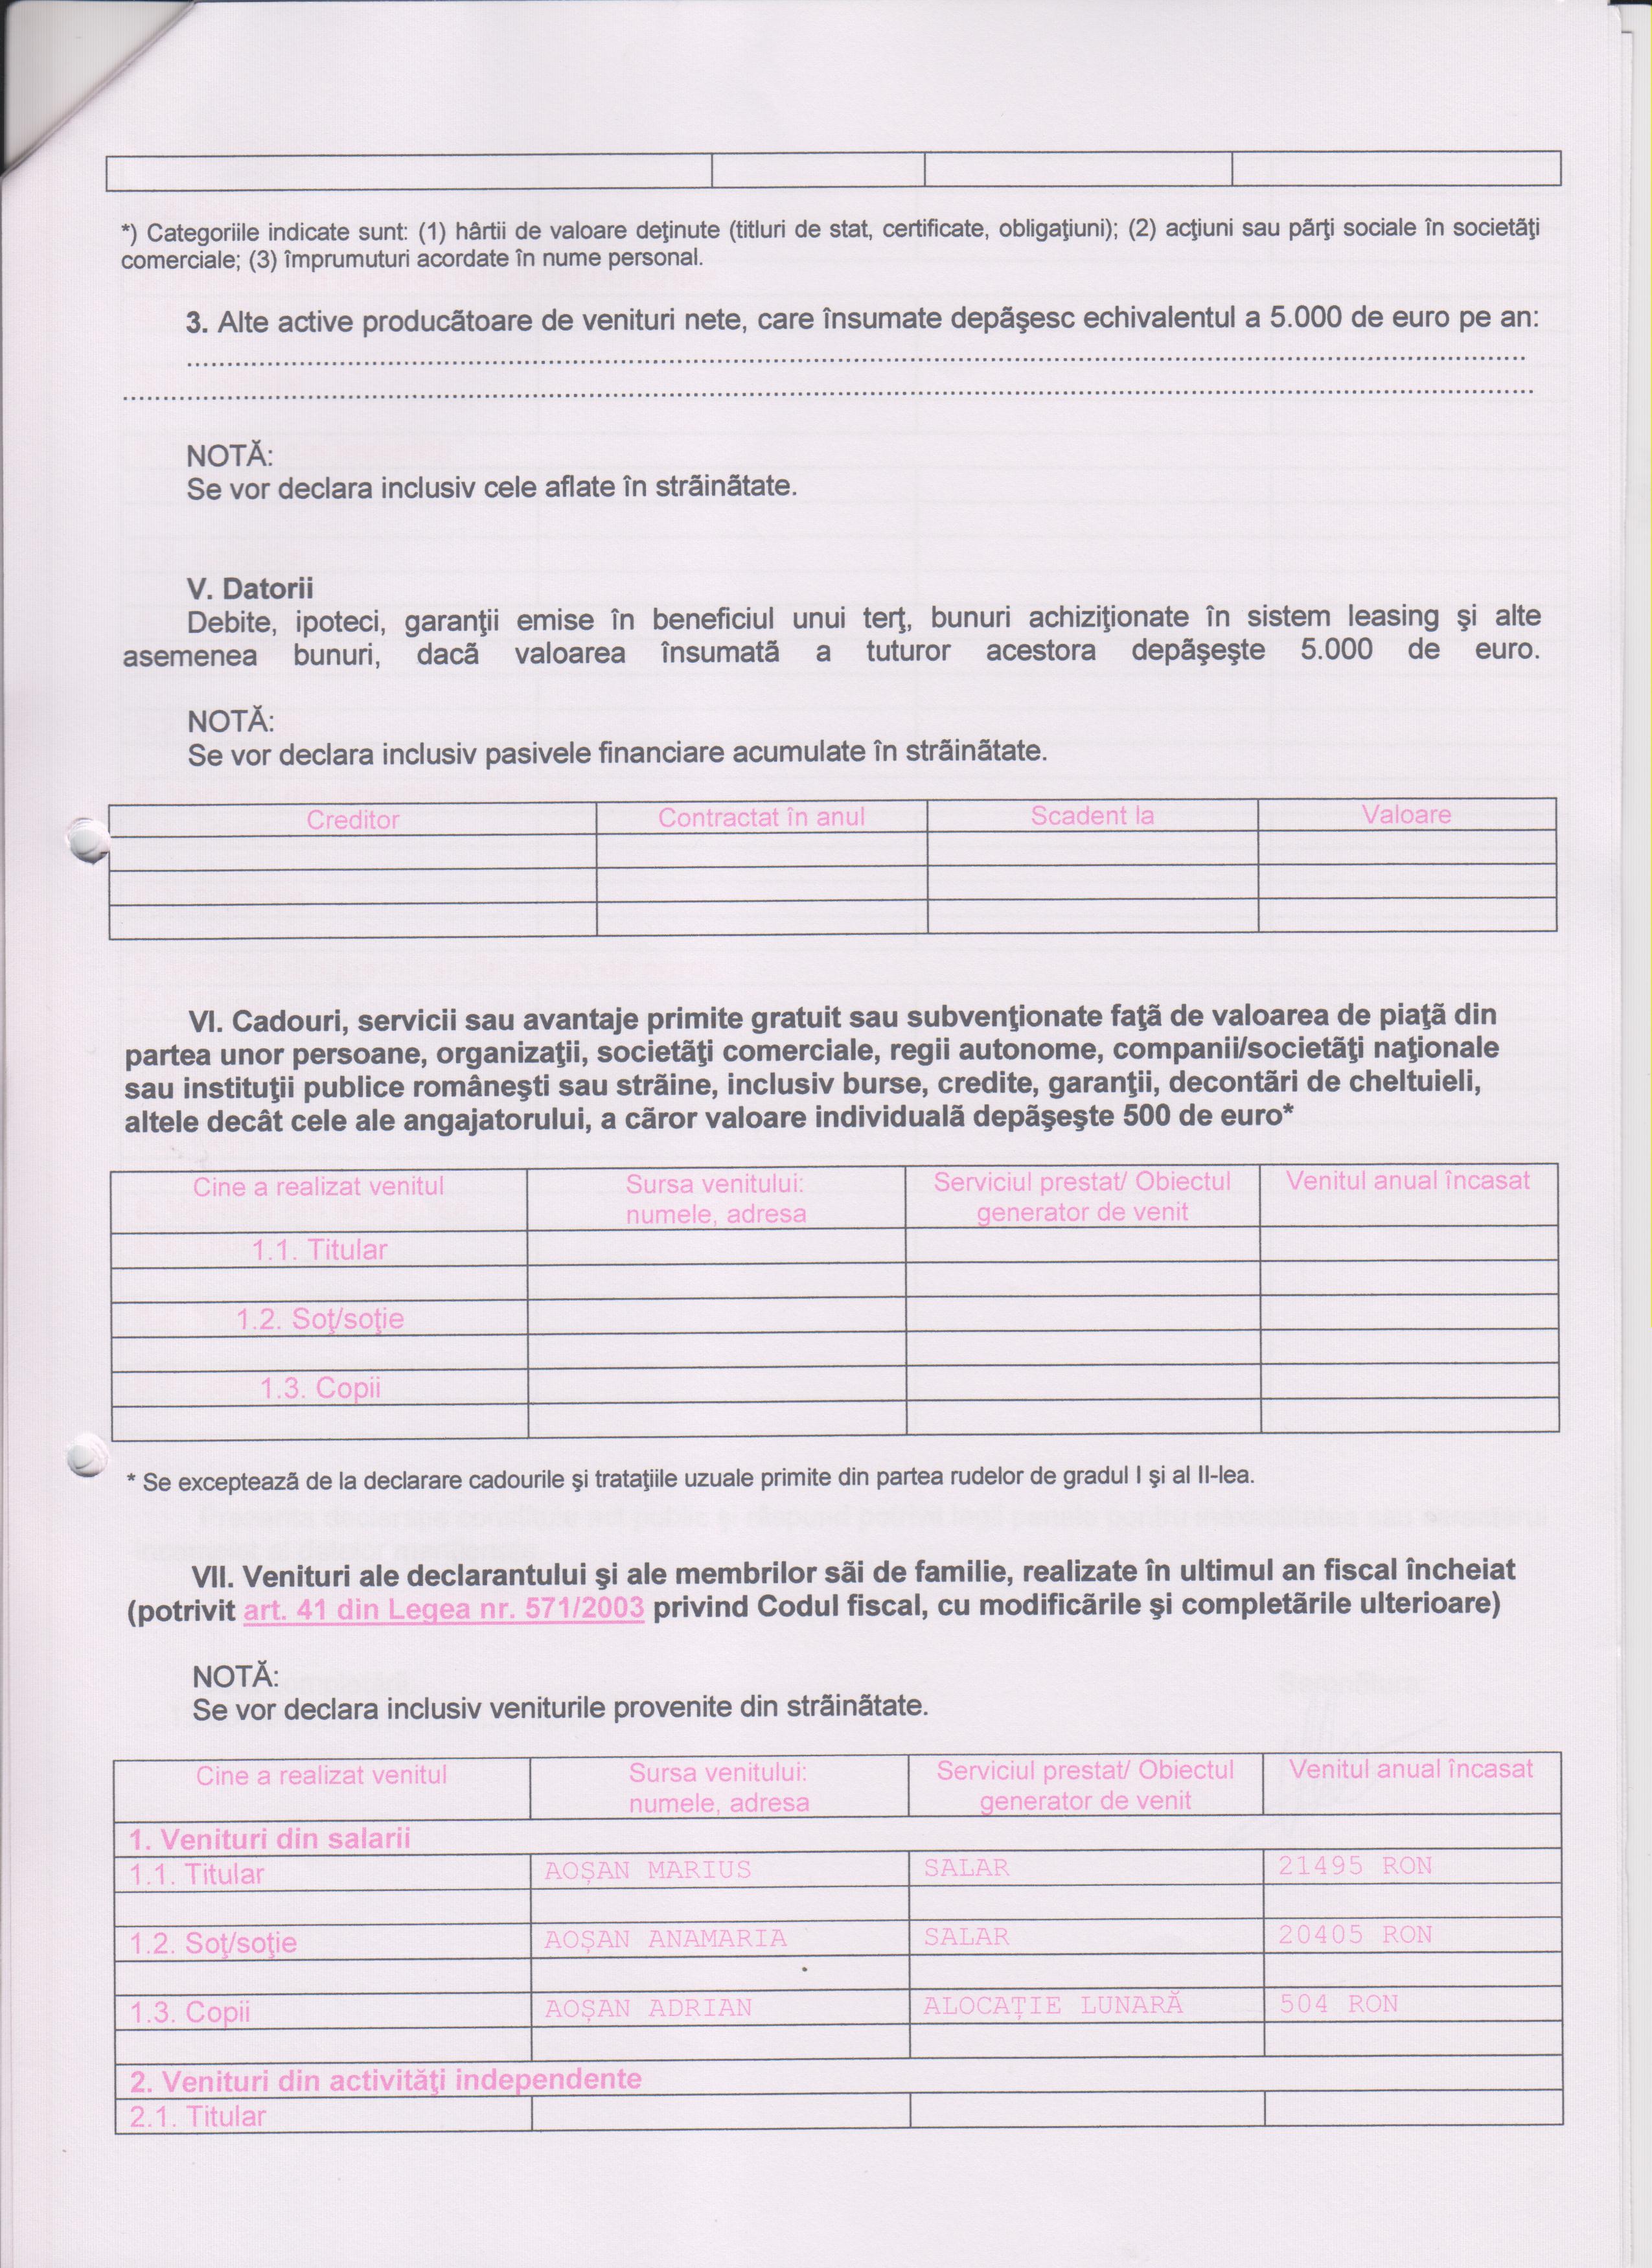 Declaratia de avere si de interese din data 21.09.2011 - pagina 3 din 6